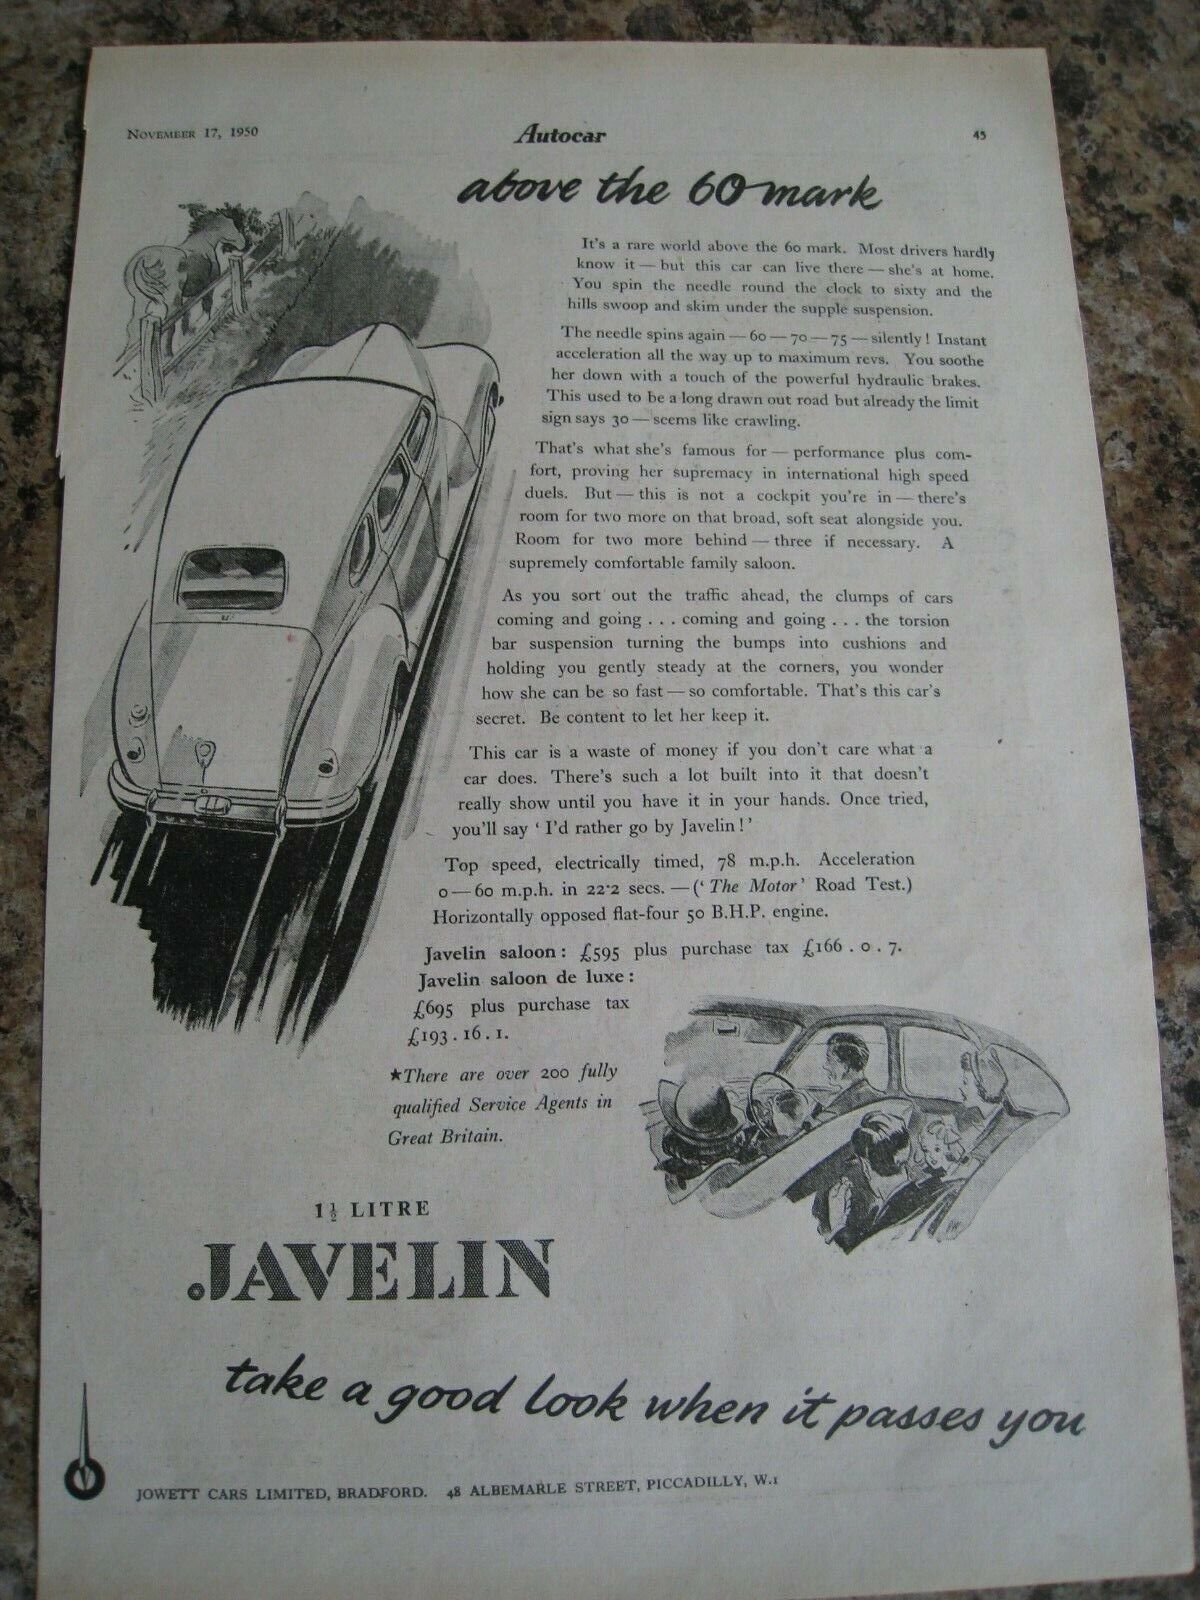 1.5 LITRE JAVELIN JOWETT CARS LTD BRADFORD 60 MARK 1950 ADVERT A4 SIZE FILE M